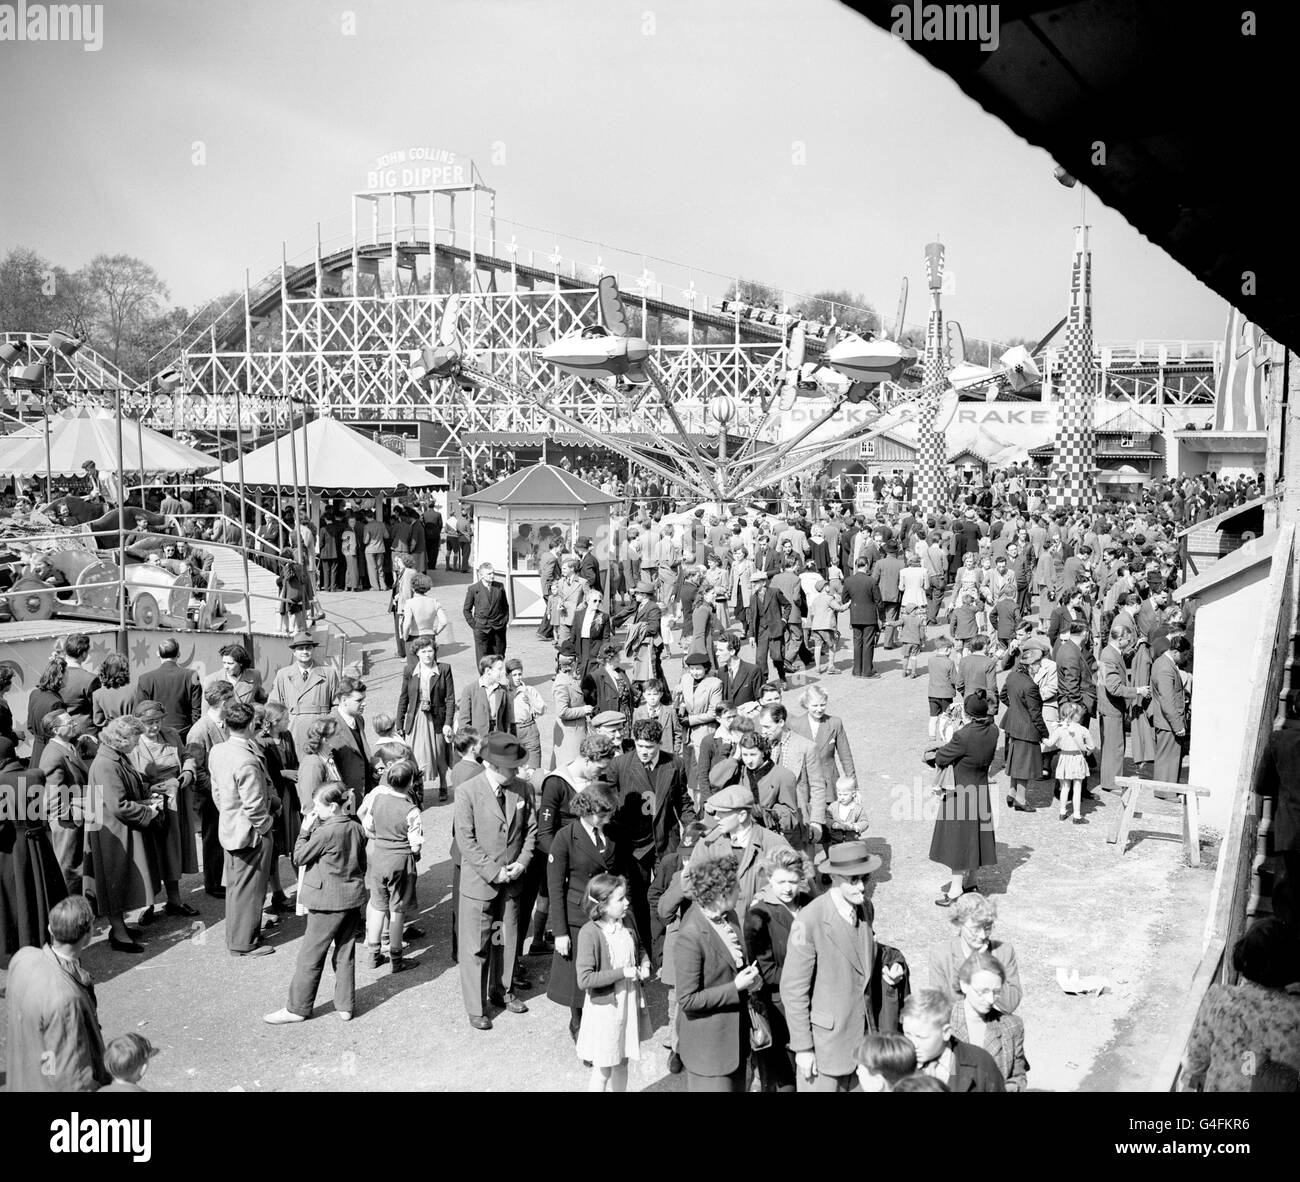 La foule remplit la foire d'amusement Festival Gardens à Battersea Park, Londres, pendant le Festival of Britain Banque D'Images